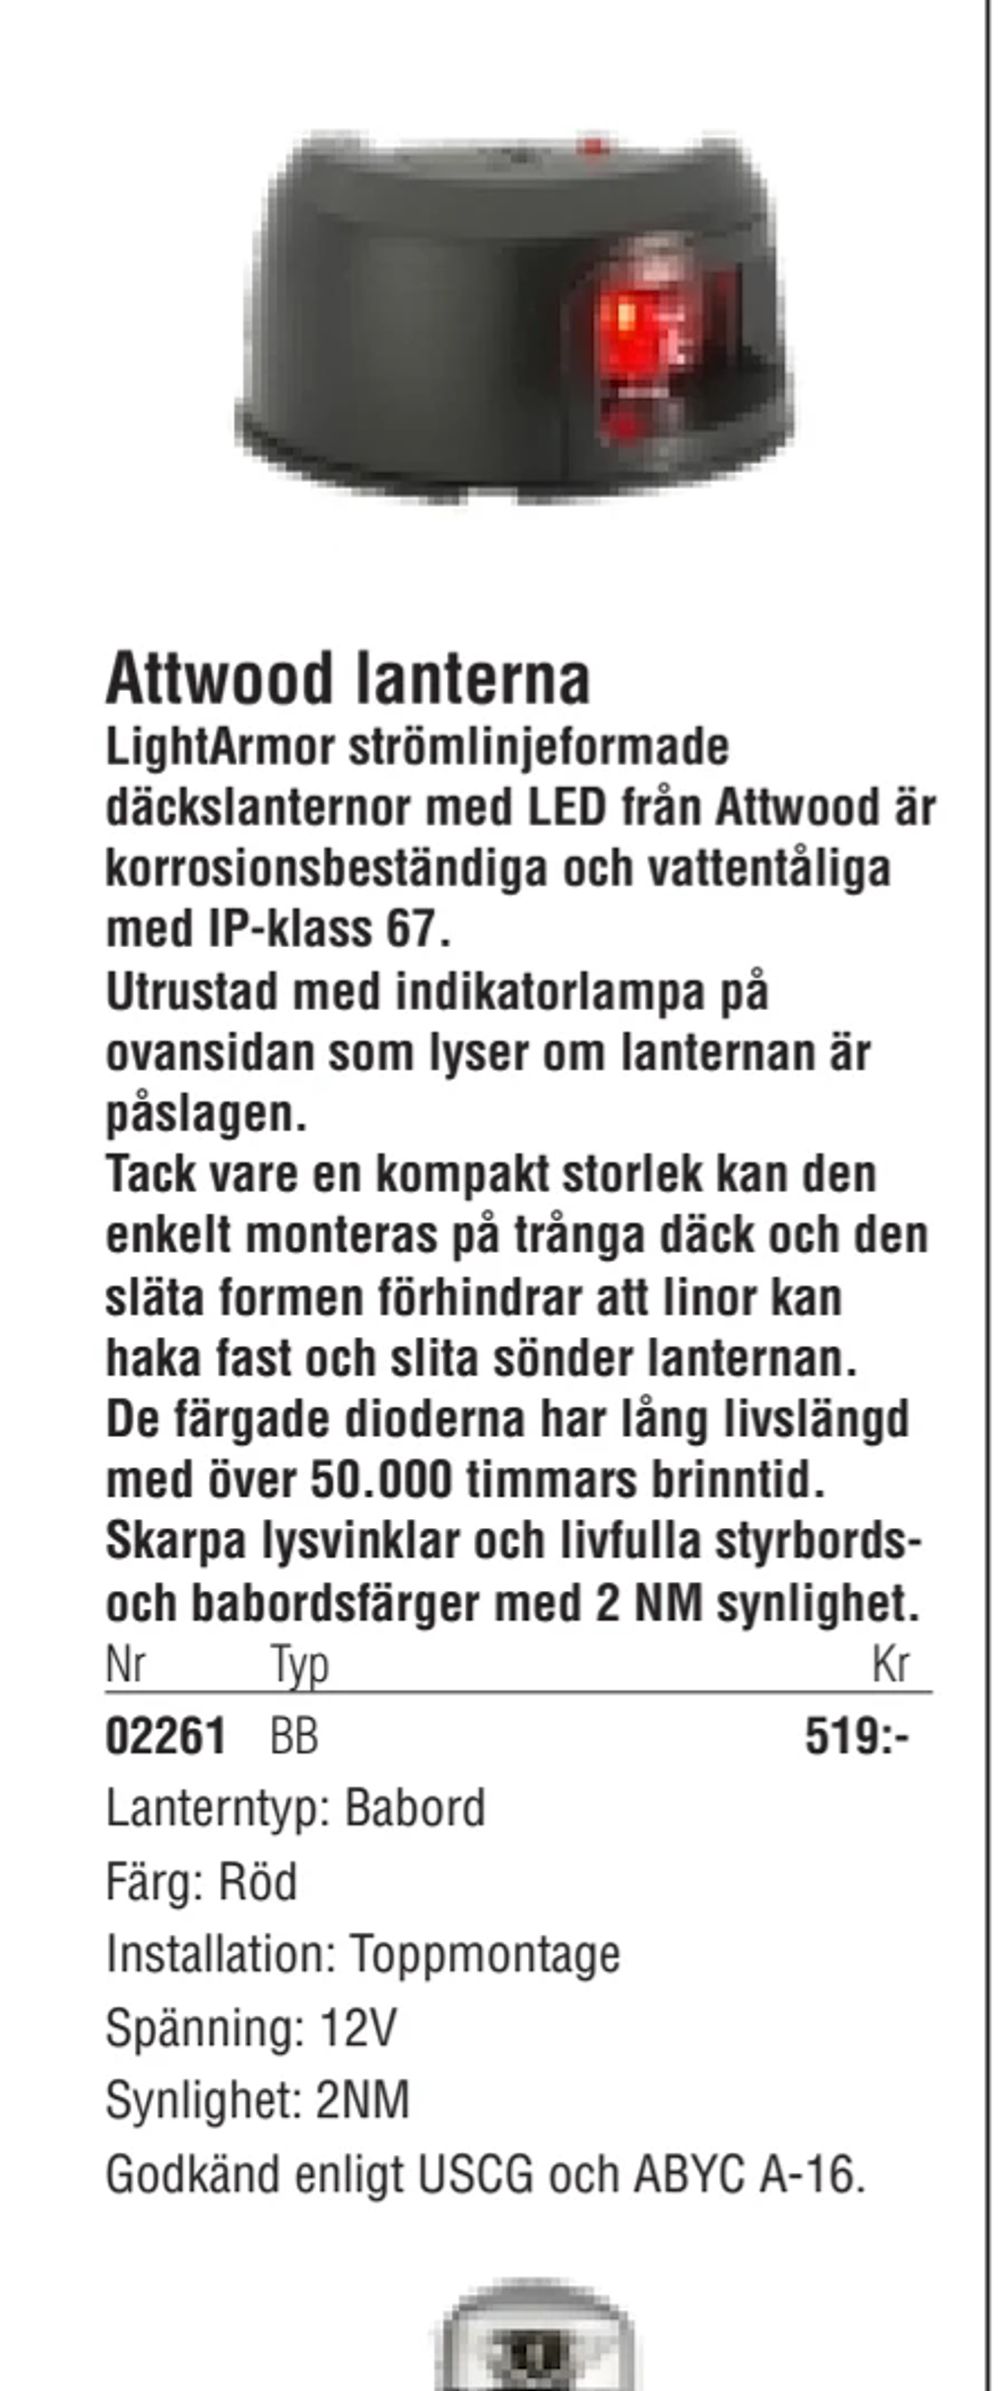 Erbjudanden på Attwood lanterna från Erlandsons Brygga för 519 kr